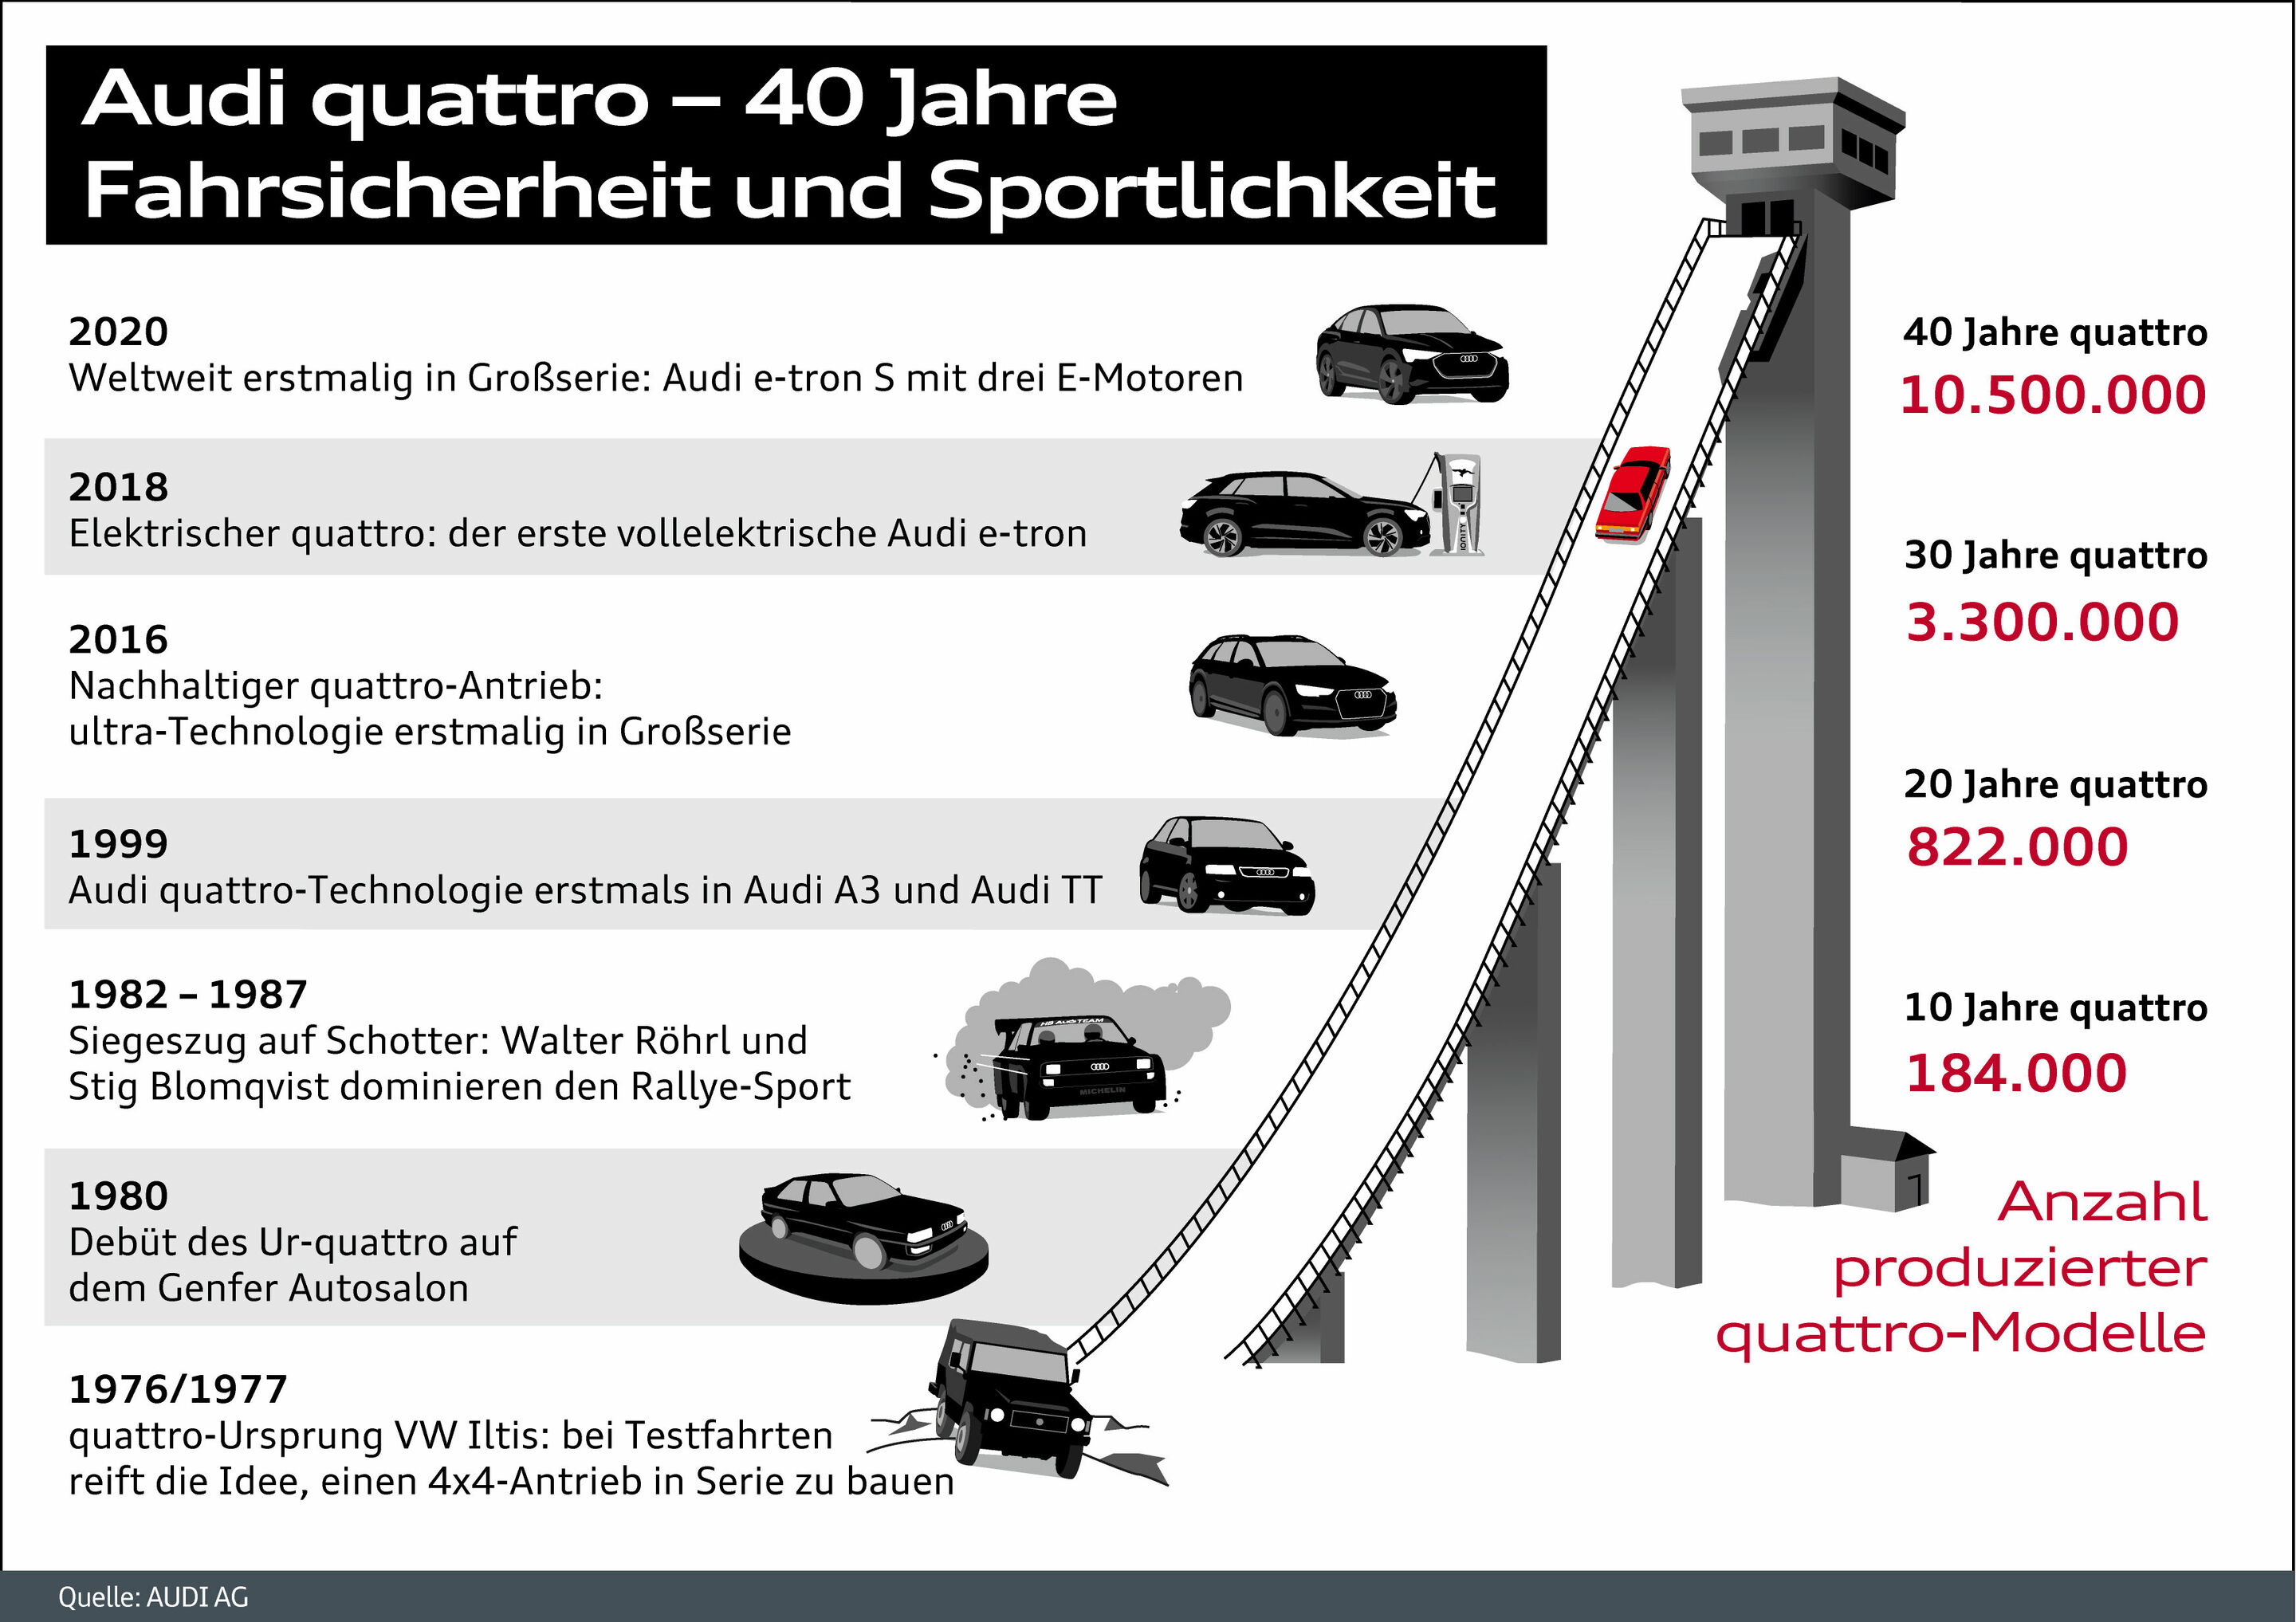 Audi quattro - 40 Jahre